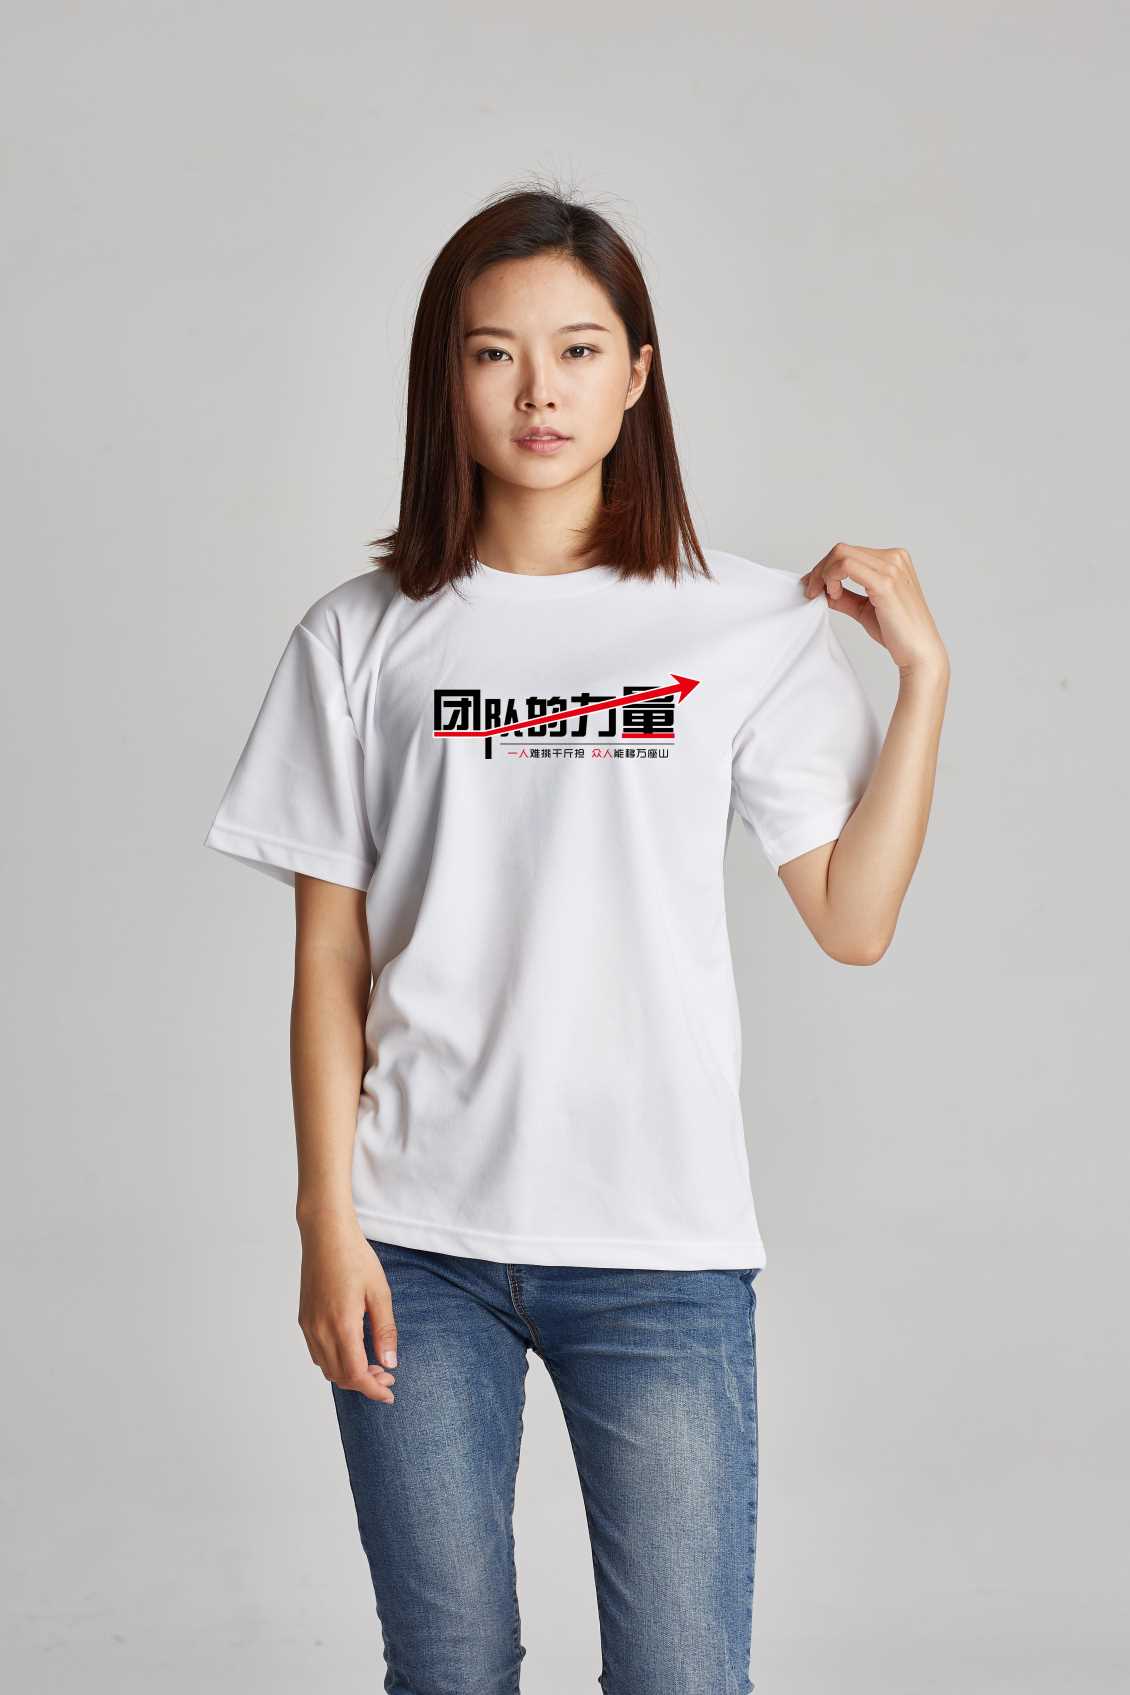 定制漳州文化衫展示您的企业文明